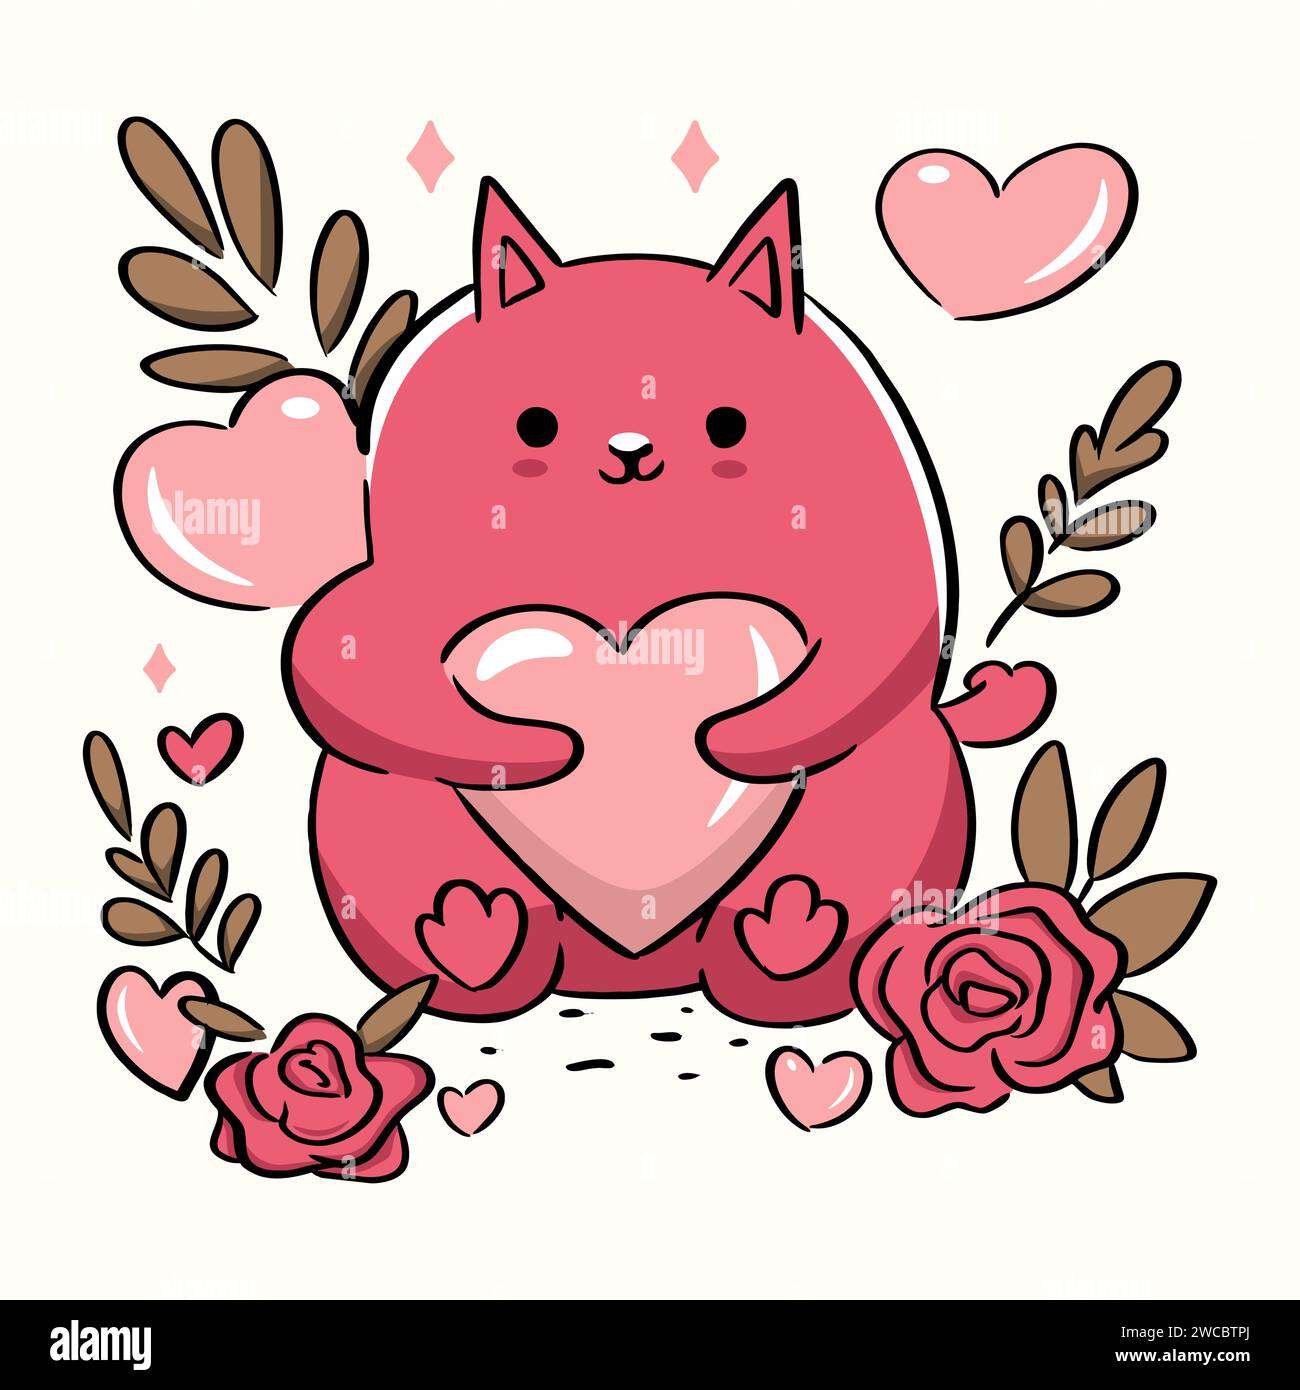 Genießen Sie die Niedlichkeit des Valentinstages mit dieser liebenswerten Vektor-Illustration mit einer liebenswerten Katze umgeben von Herzen. Mit Dem Titel 'Sweetheart Kitty Stock Vektor